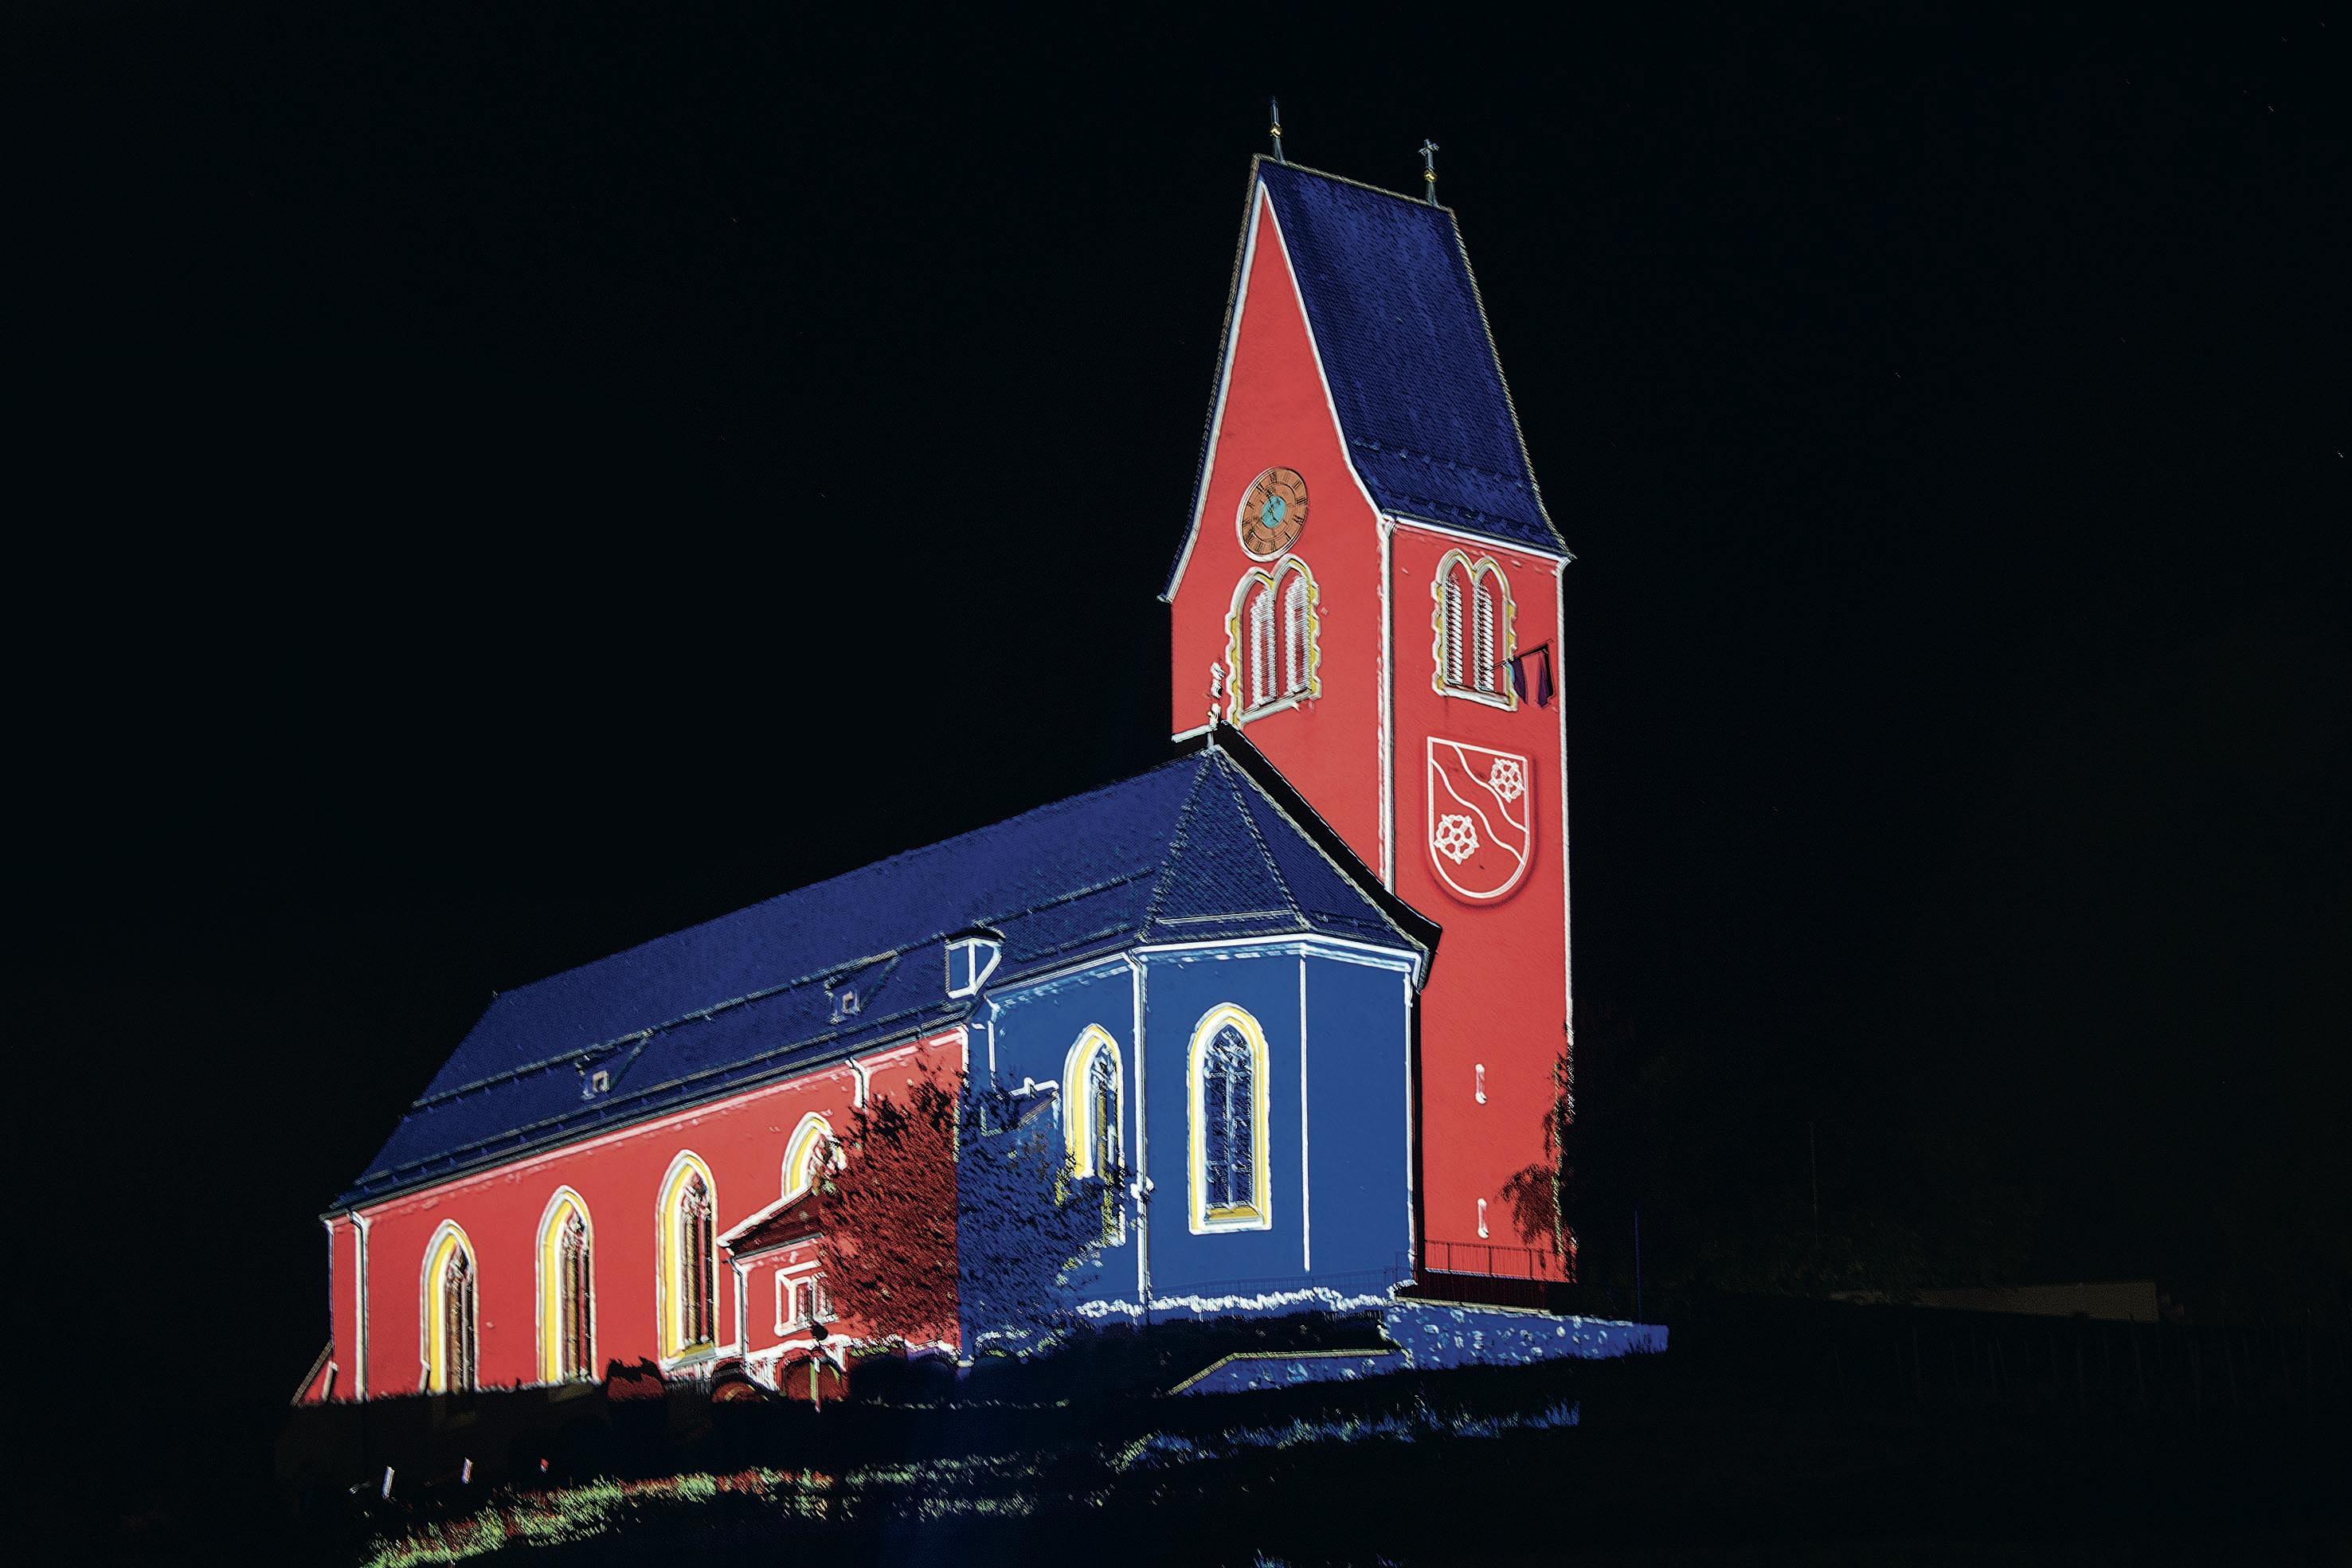 Gamprin-Bendern – Kirchhügel mit der katholischen Pfarrkirche Mariä Himmelfahrt und dem alten Pfarrhaus 